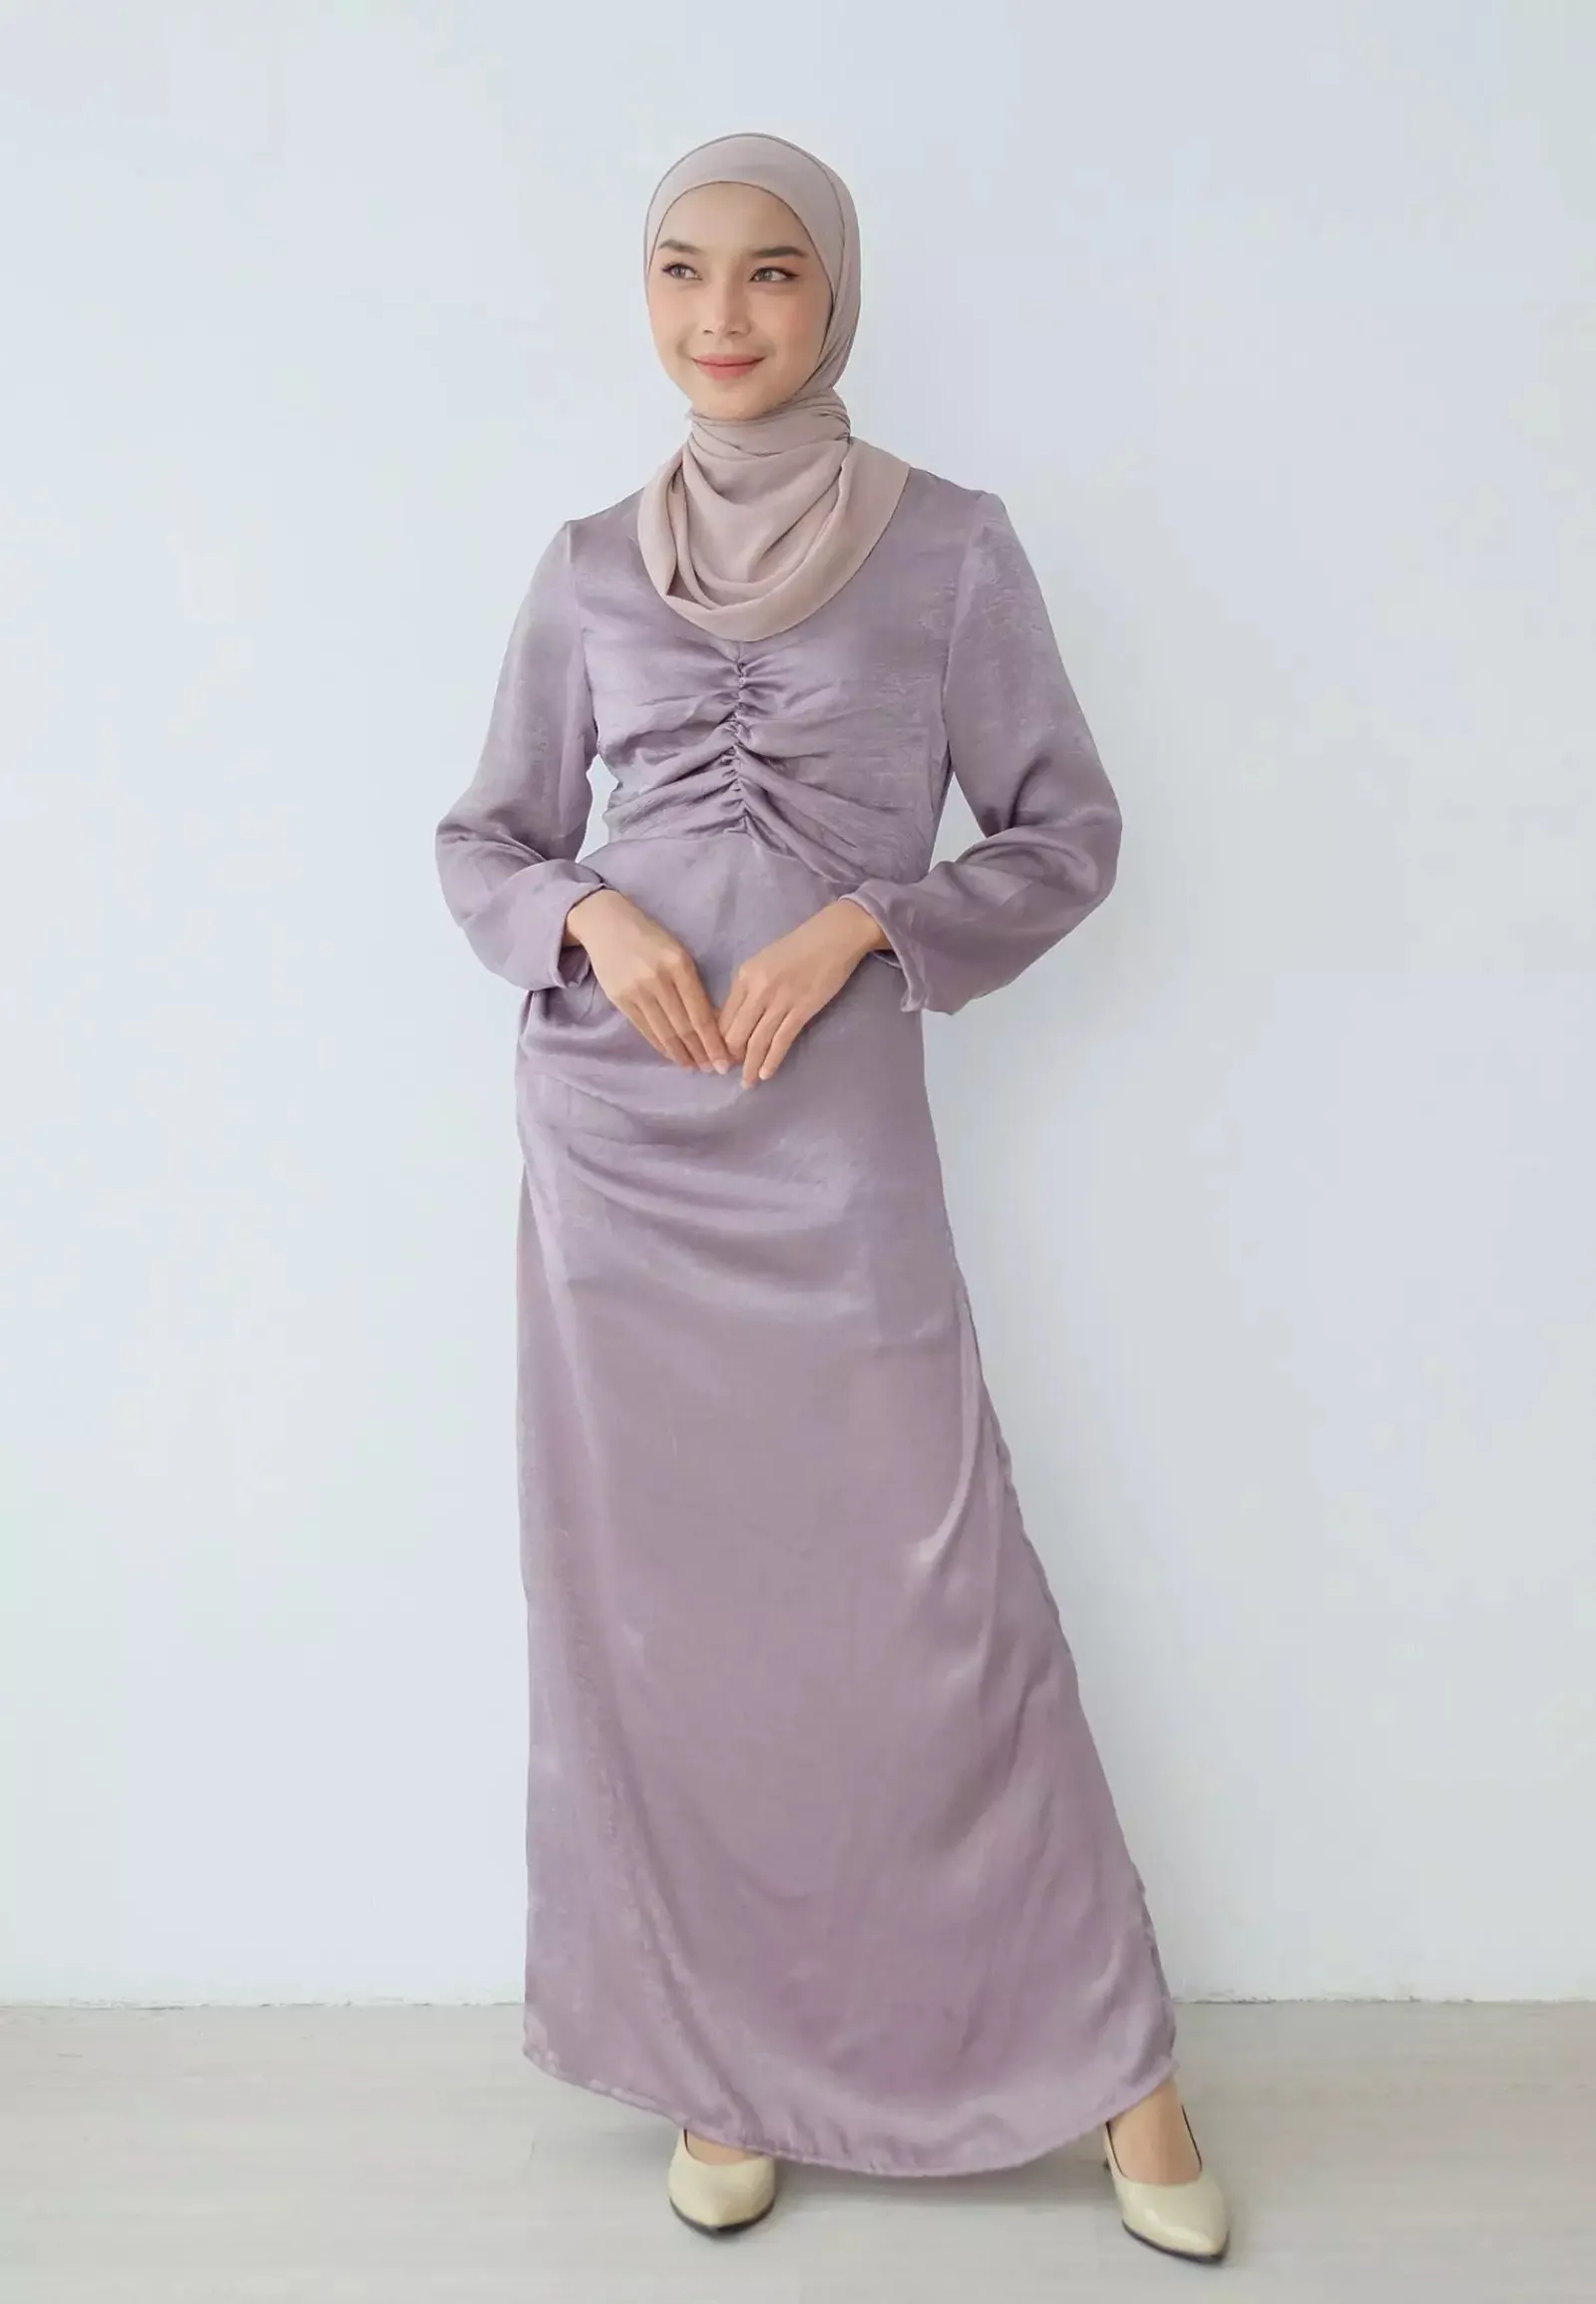 Baju Warna Taro Cocok dengan Jilbab Warna Apa? Ini Rekomendasinya!